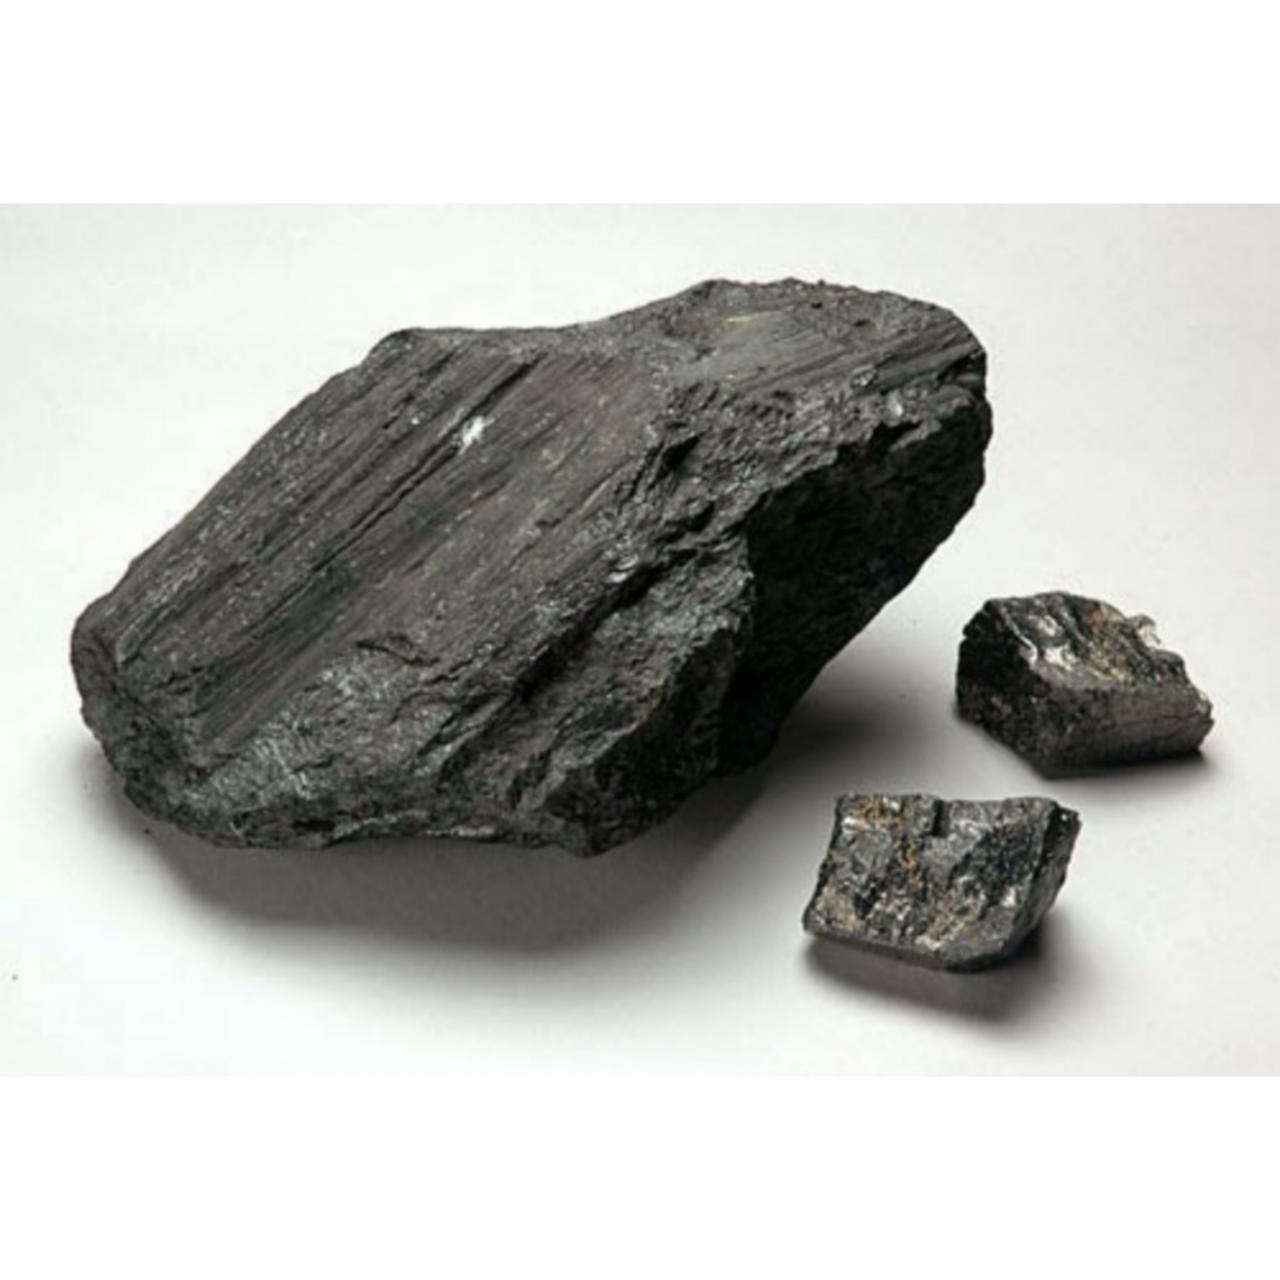 Каменный уголь полезное ископаемое. Каменный уголь антрацит. Уголь бурый каменный антрацит. Уголь битуминозный антрацит каменный. Каменный уголь на урале